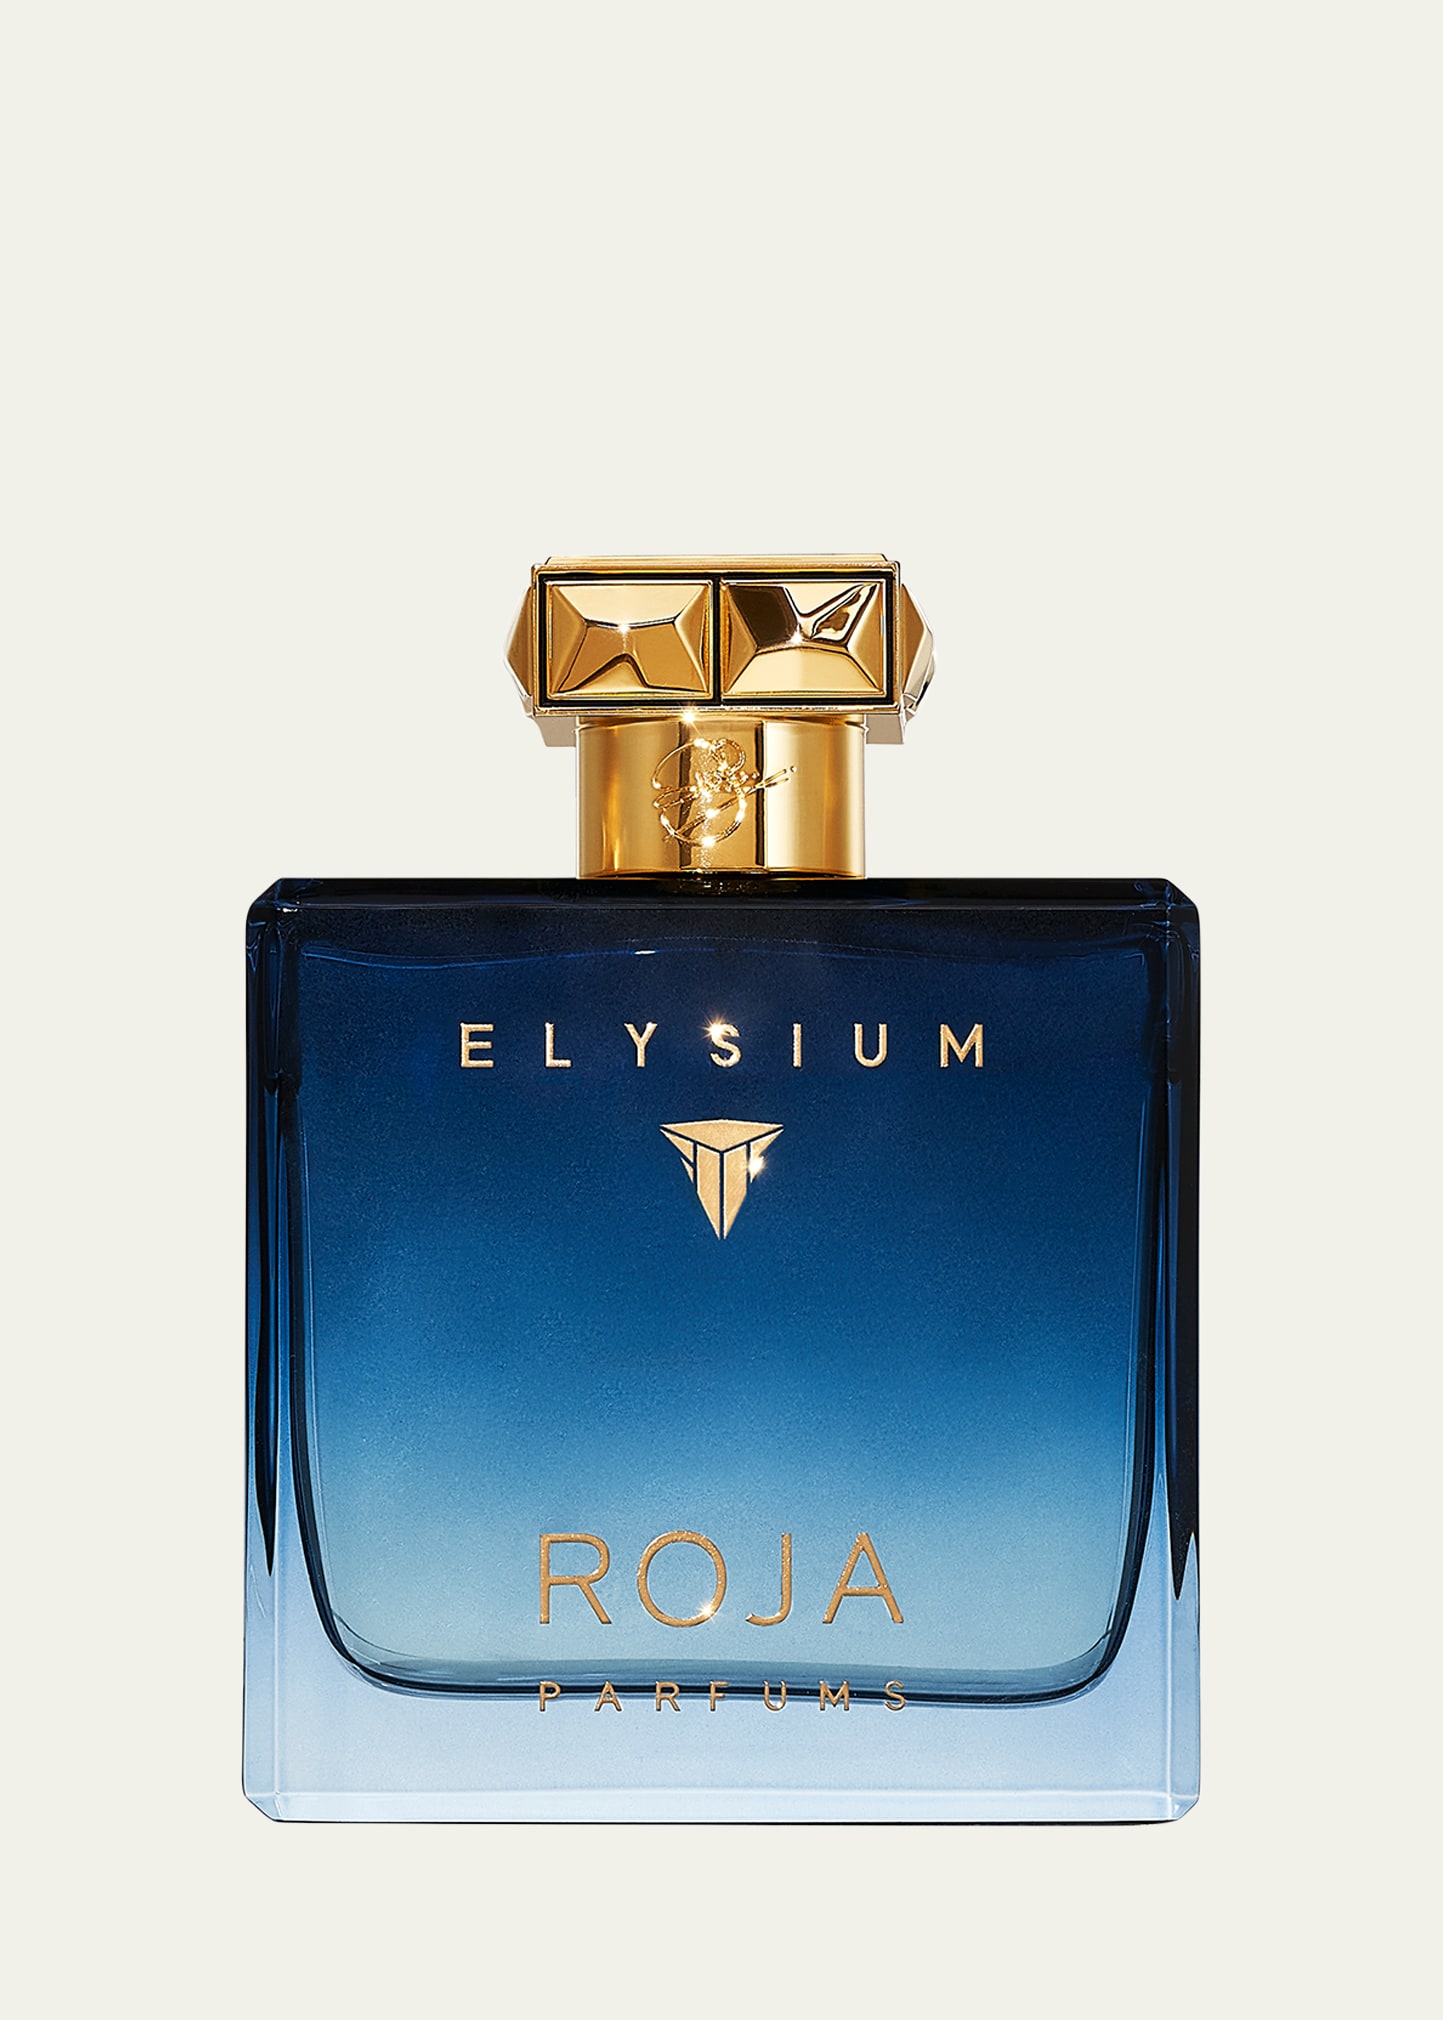 Exclusive Elysium Parfum Cologne, 3.4 oz.